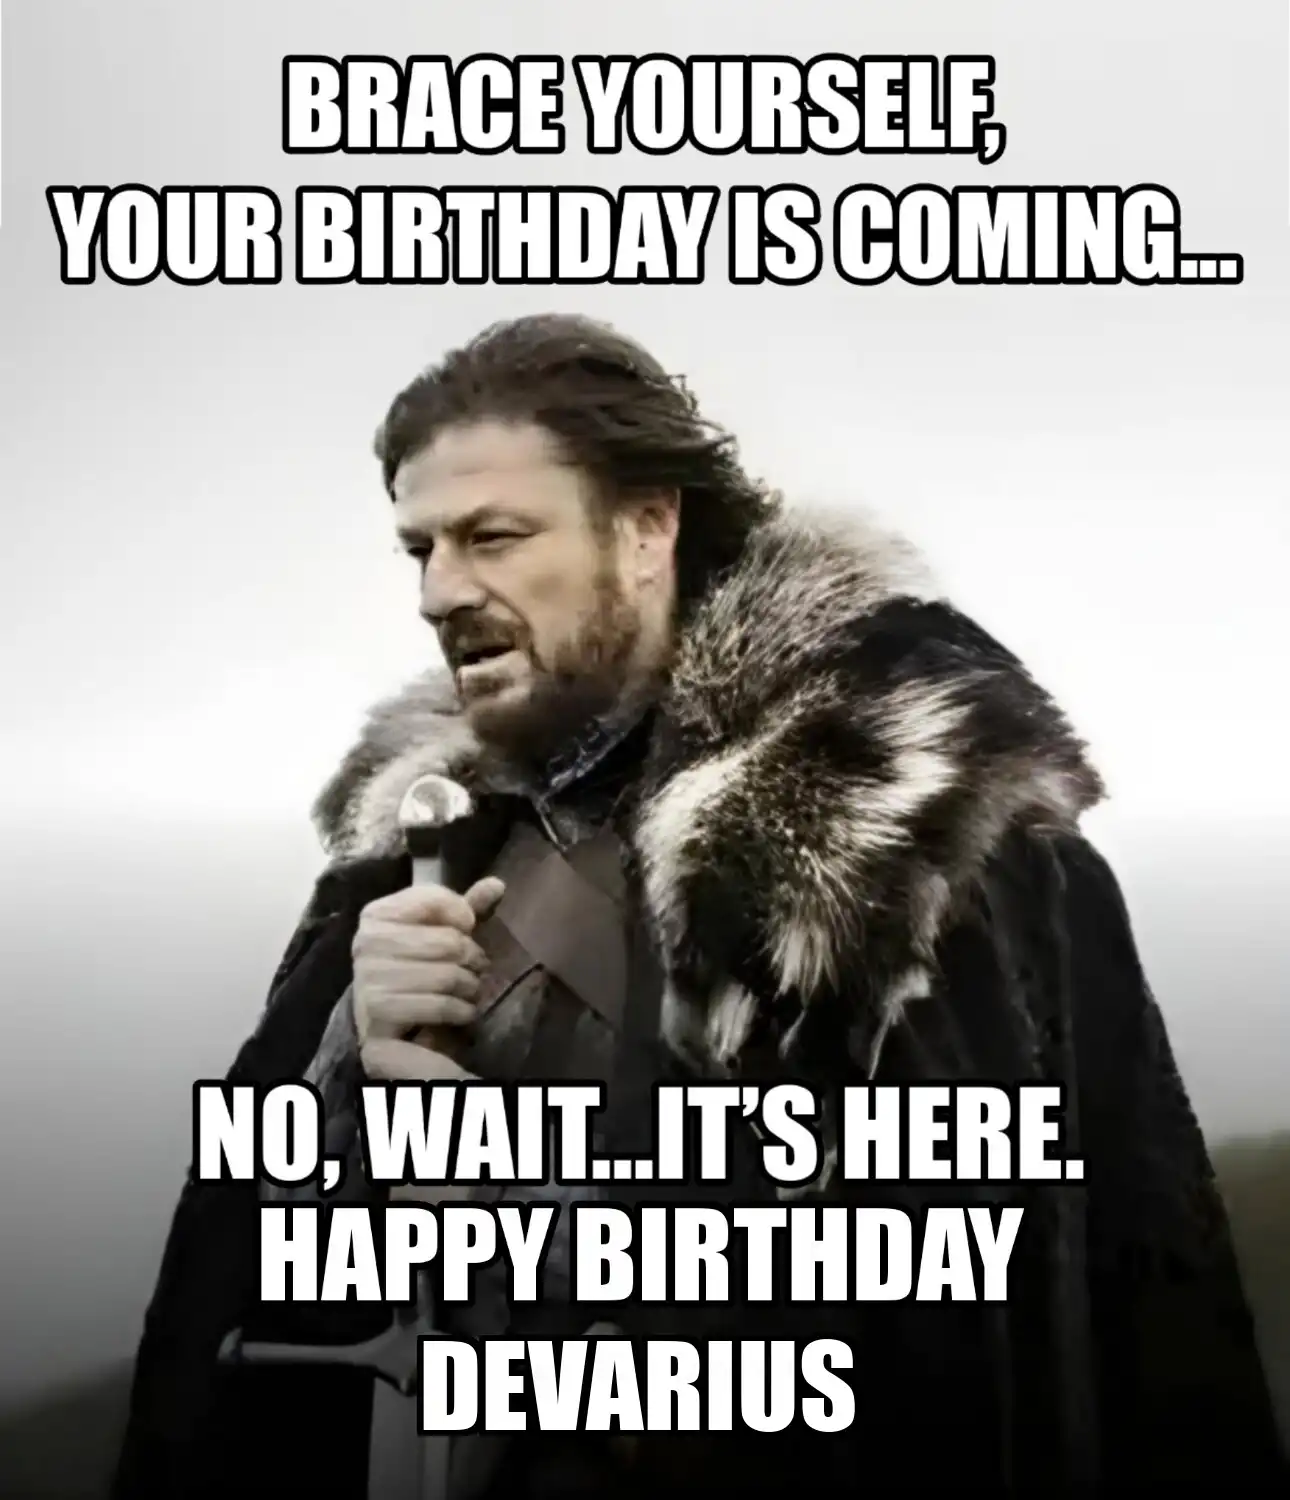 Happy Birthday Devarius Brace Yourself Your Birthday Is Coming Meme